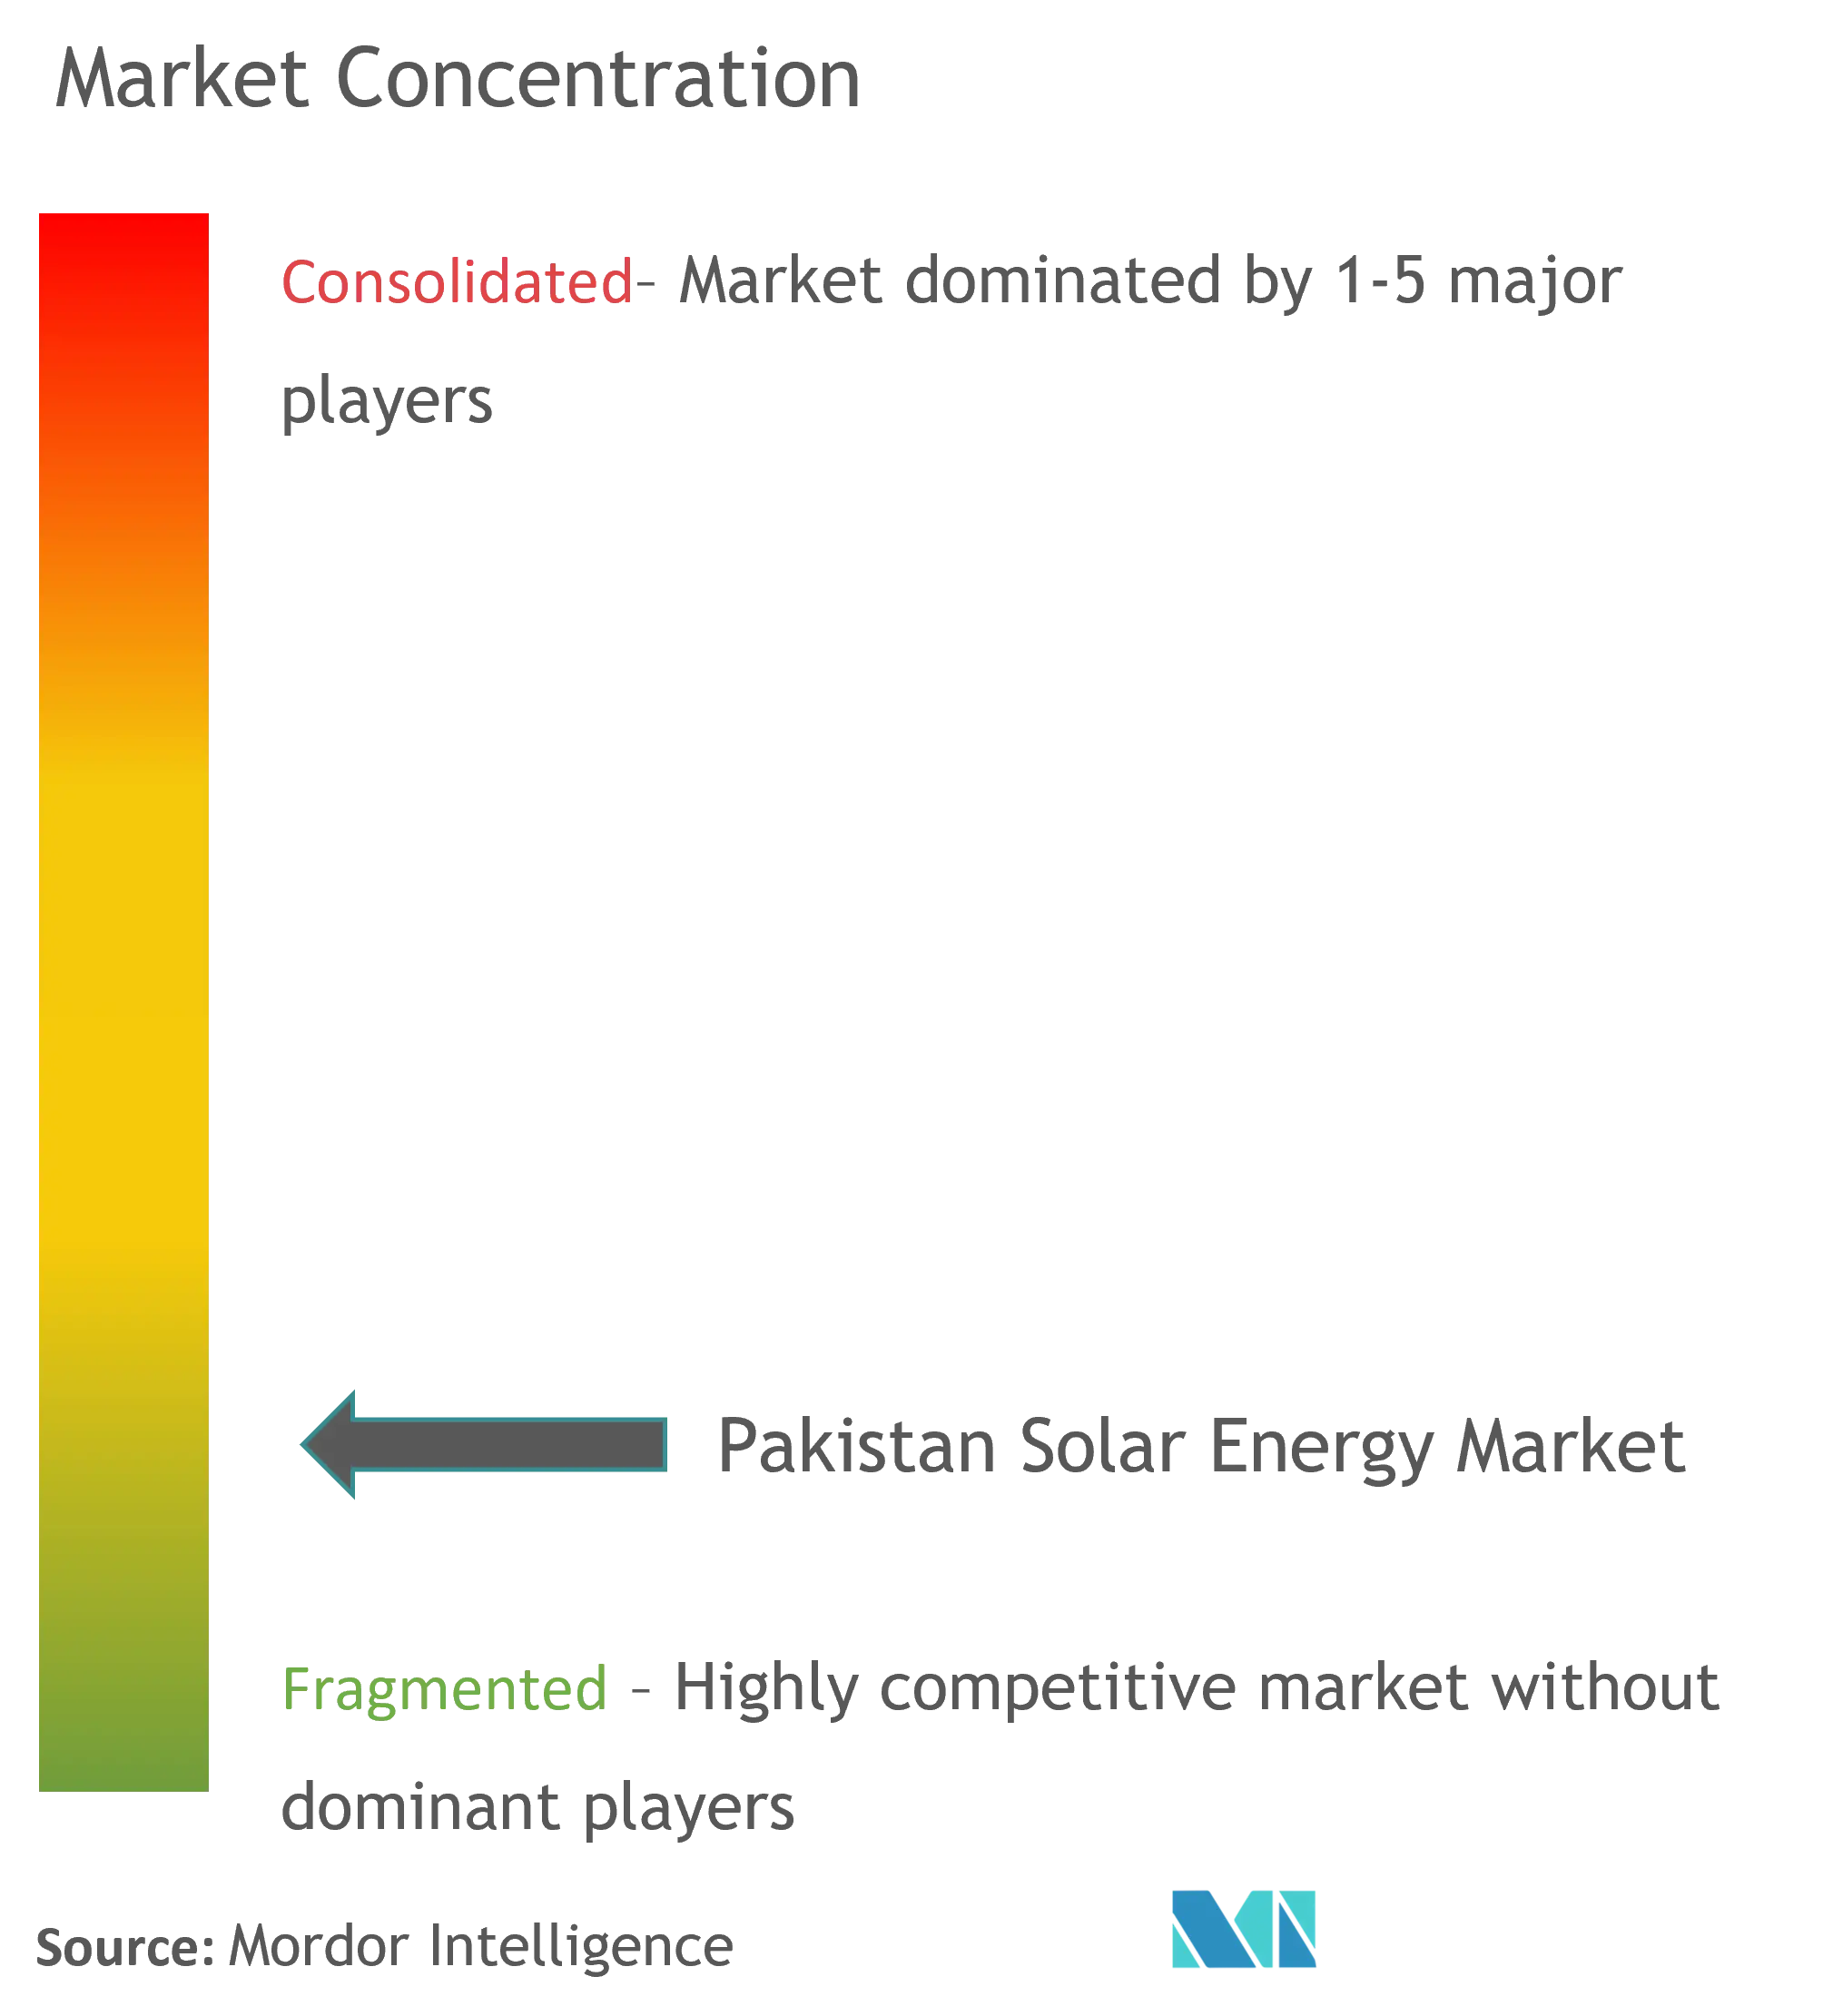 Market Concentration-Pakistan Solar Energy Market